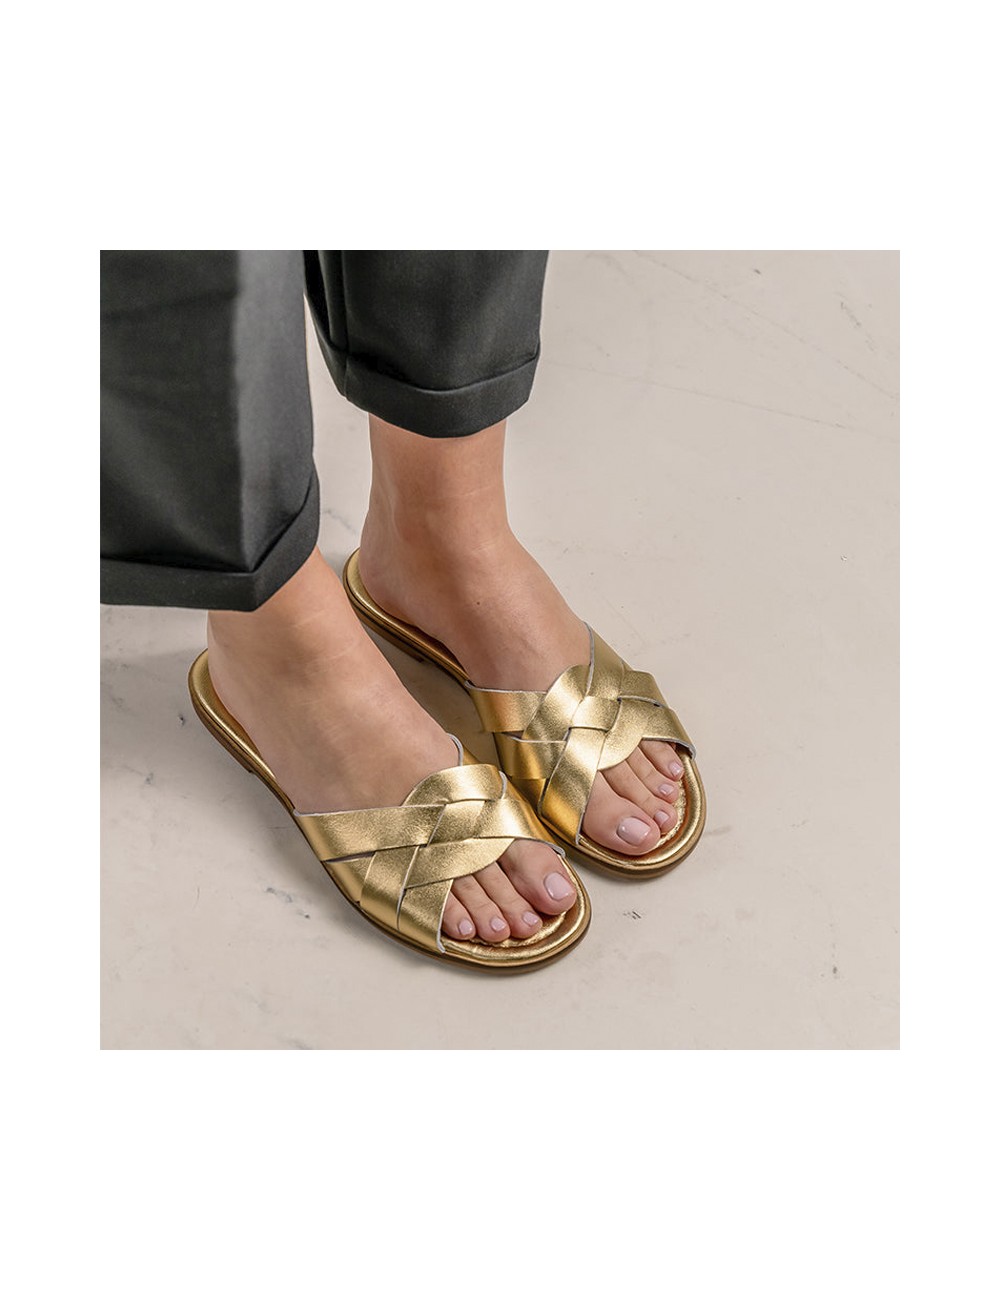 Mules plates cuir tressé doré - Accessoires pour chaussures